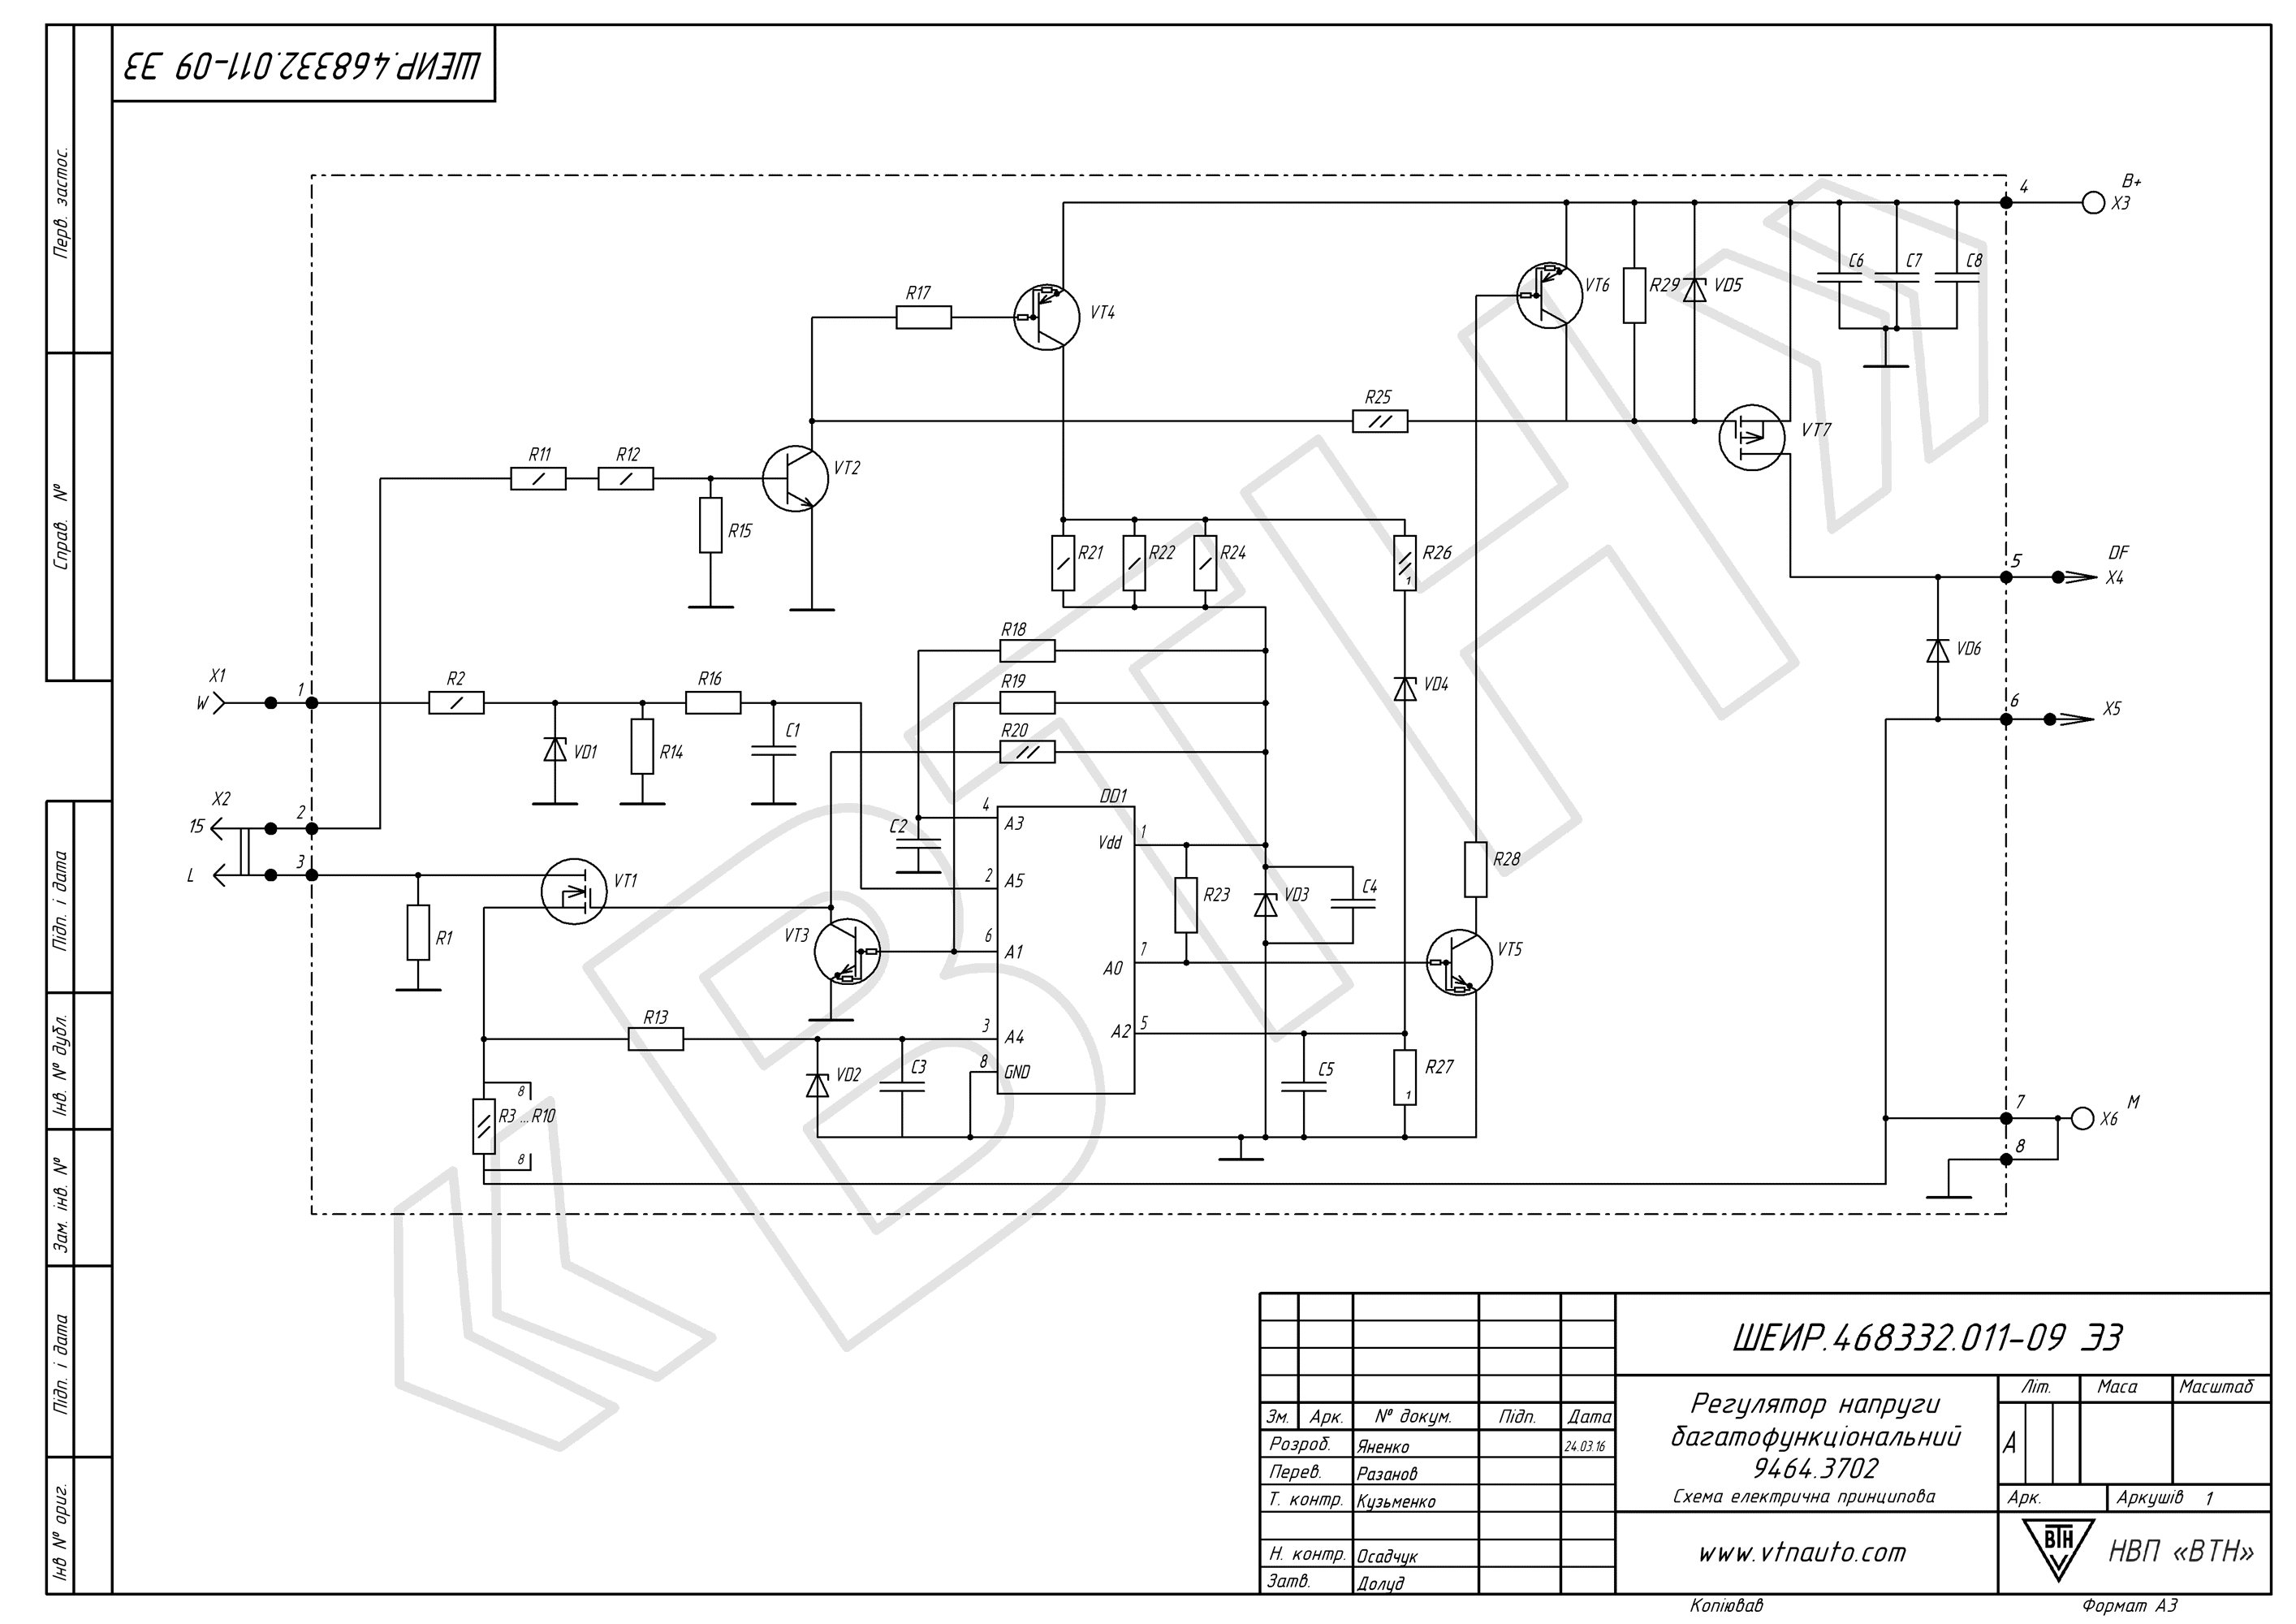 Circuit diagram of voltage regulator 9464.3702